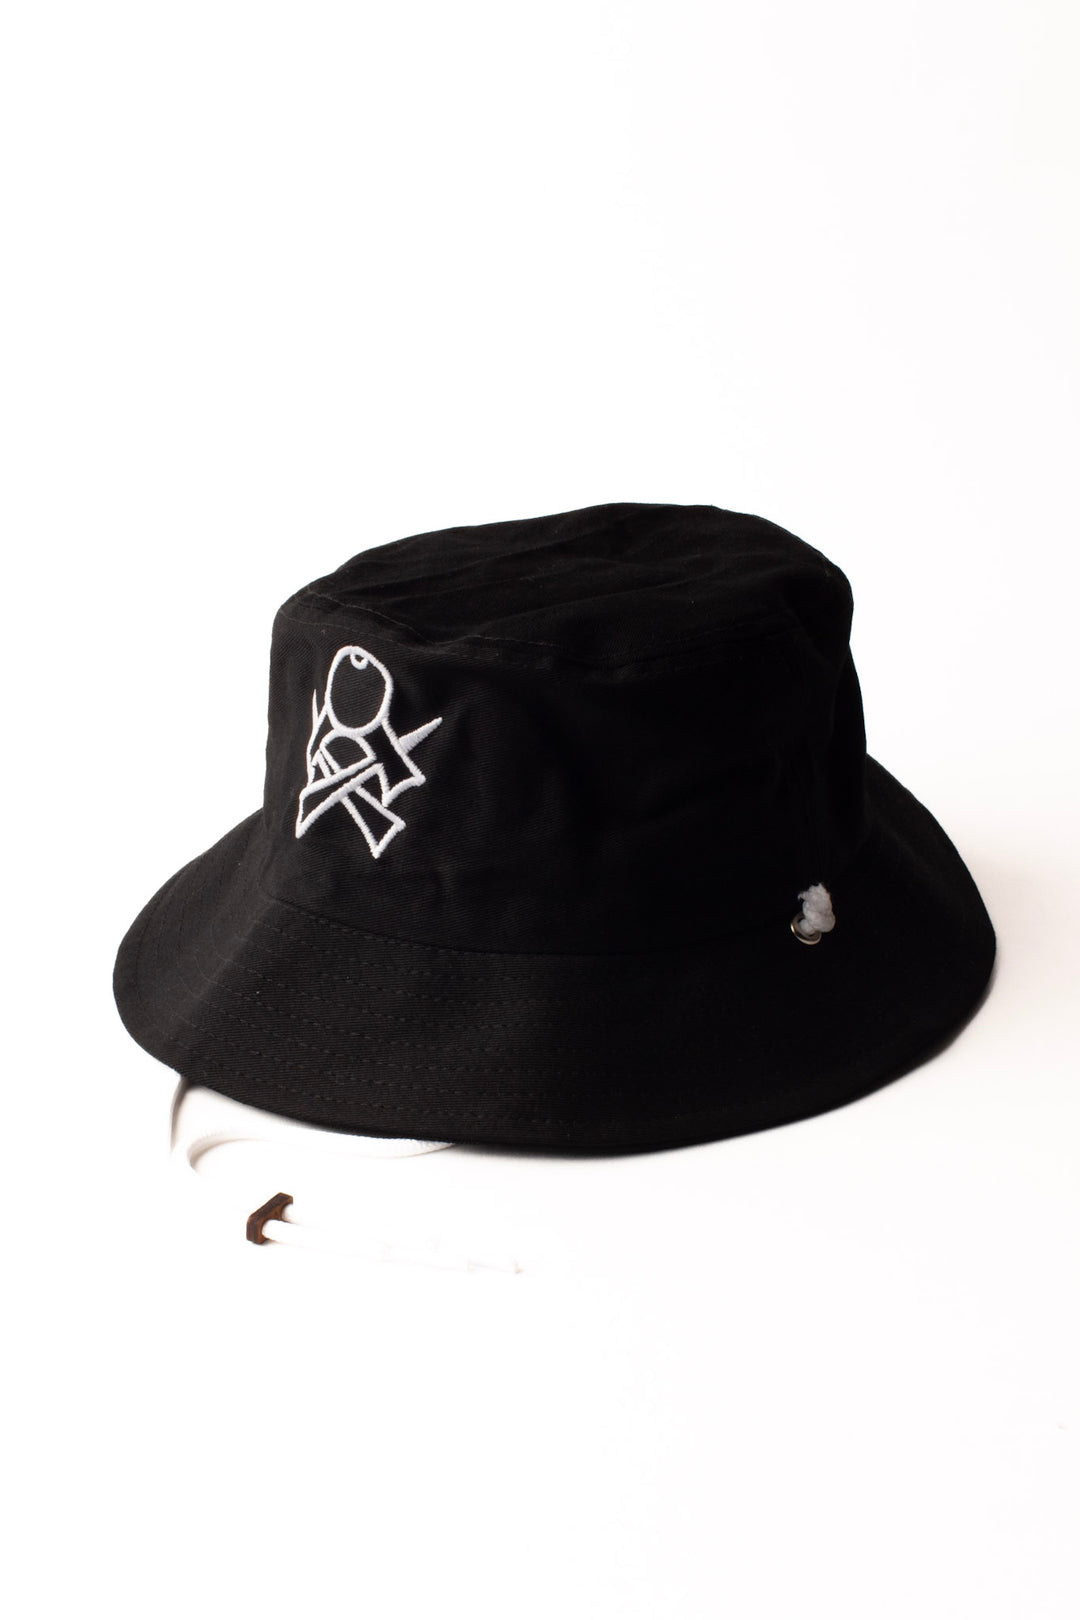 FINDLAY x SWEETS - Bucket Hat - Black